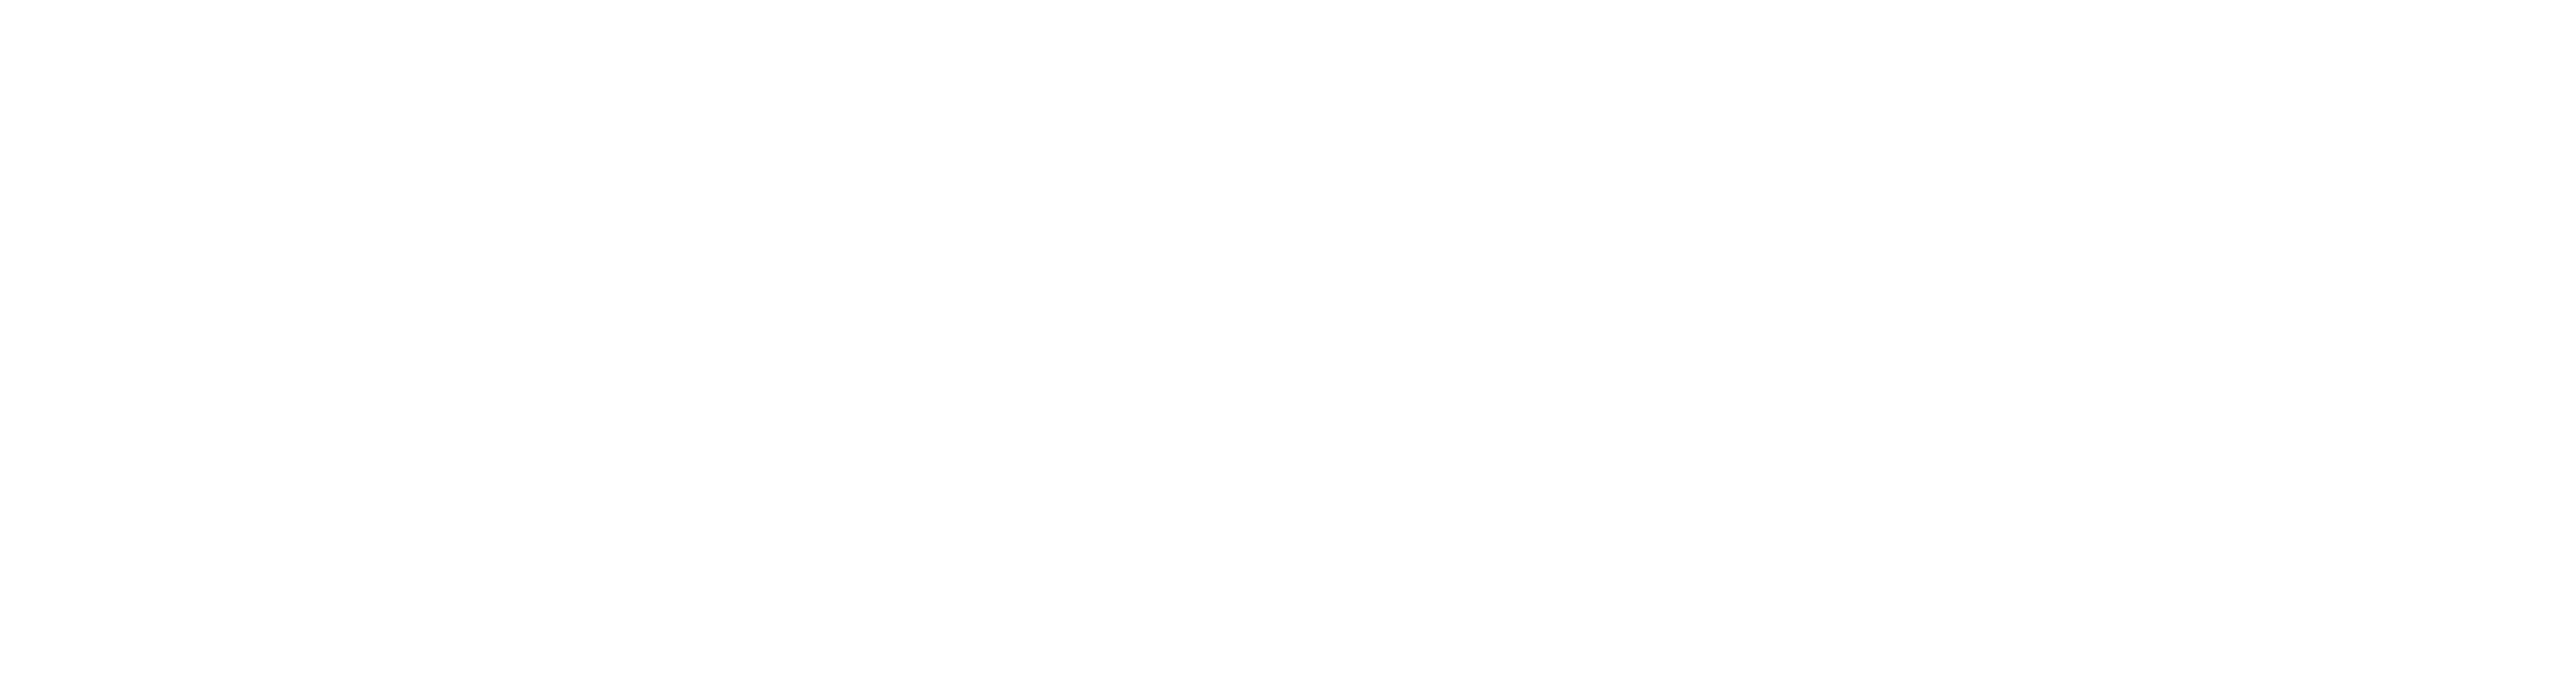 Valleyview_valleyview-reverse